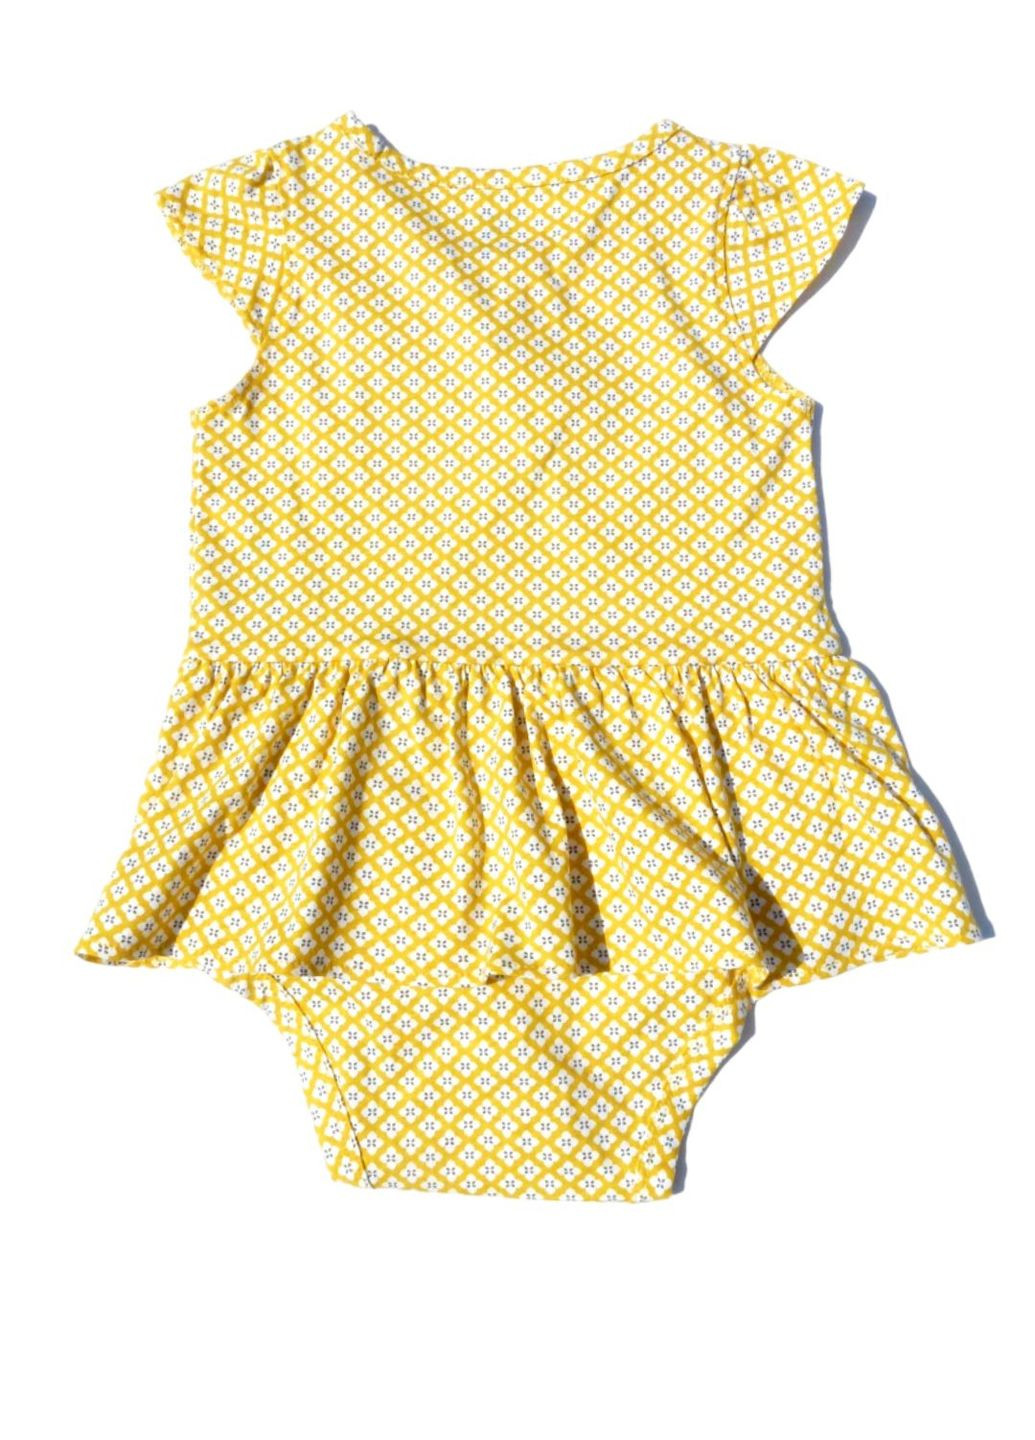 Желтый комплект (боди+лосины) саrtеr's для девочки, летний, желто-синий, 92 см Carter's